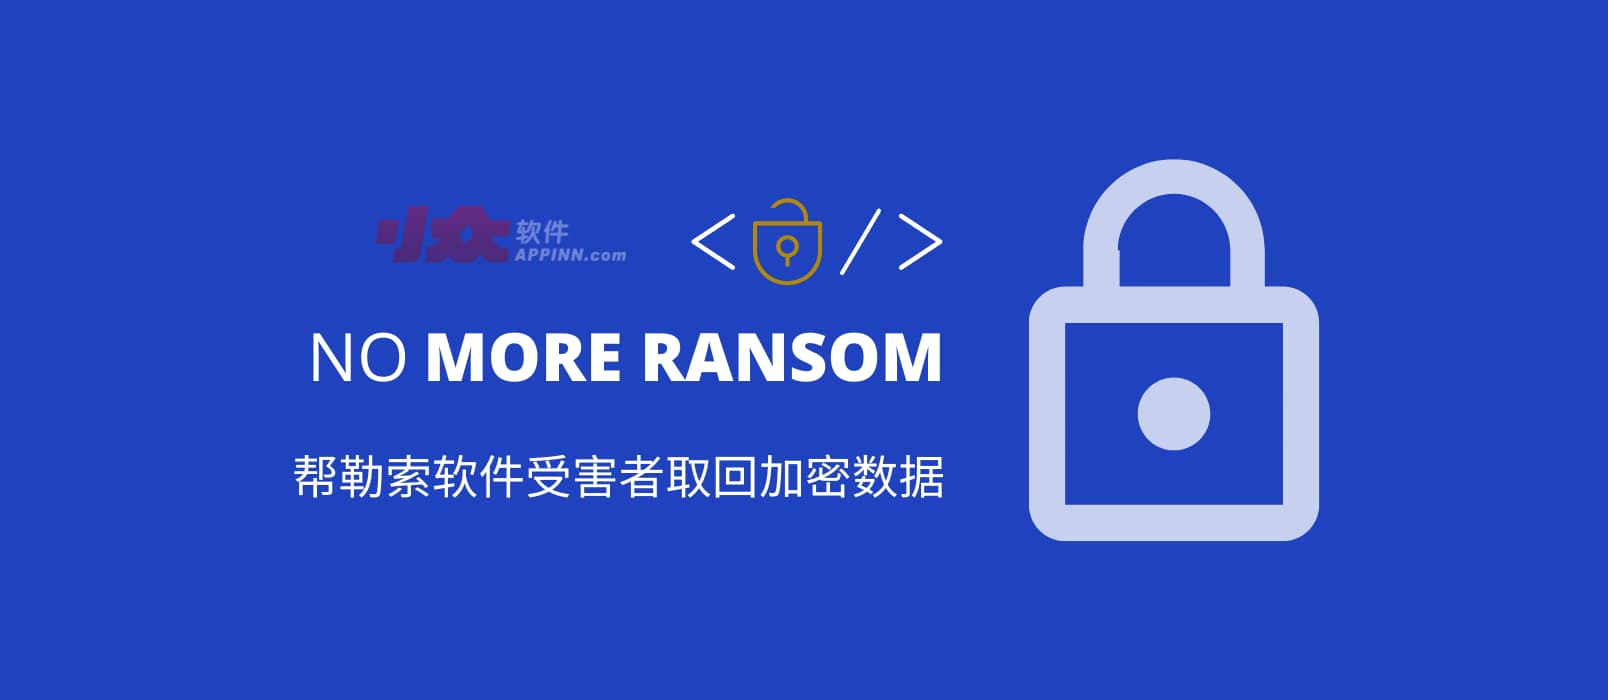 拒绝勒索软件 No More Ransom：帮助受害者从 172 种勒索软件中取回加密数据